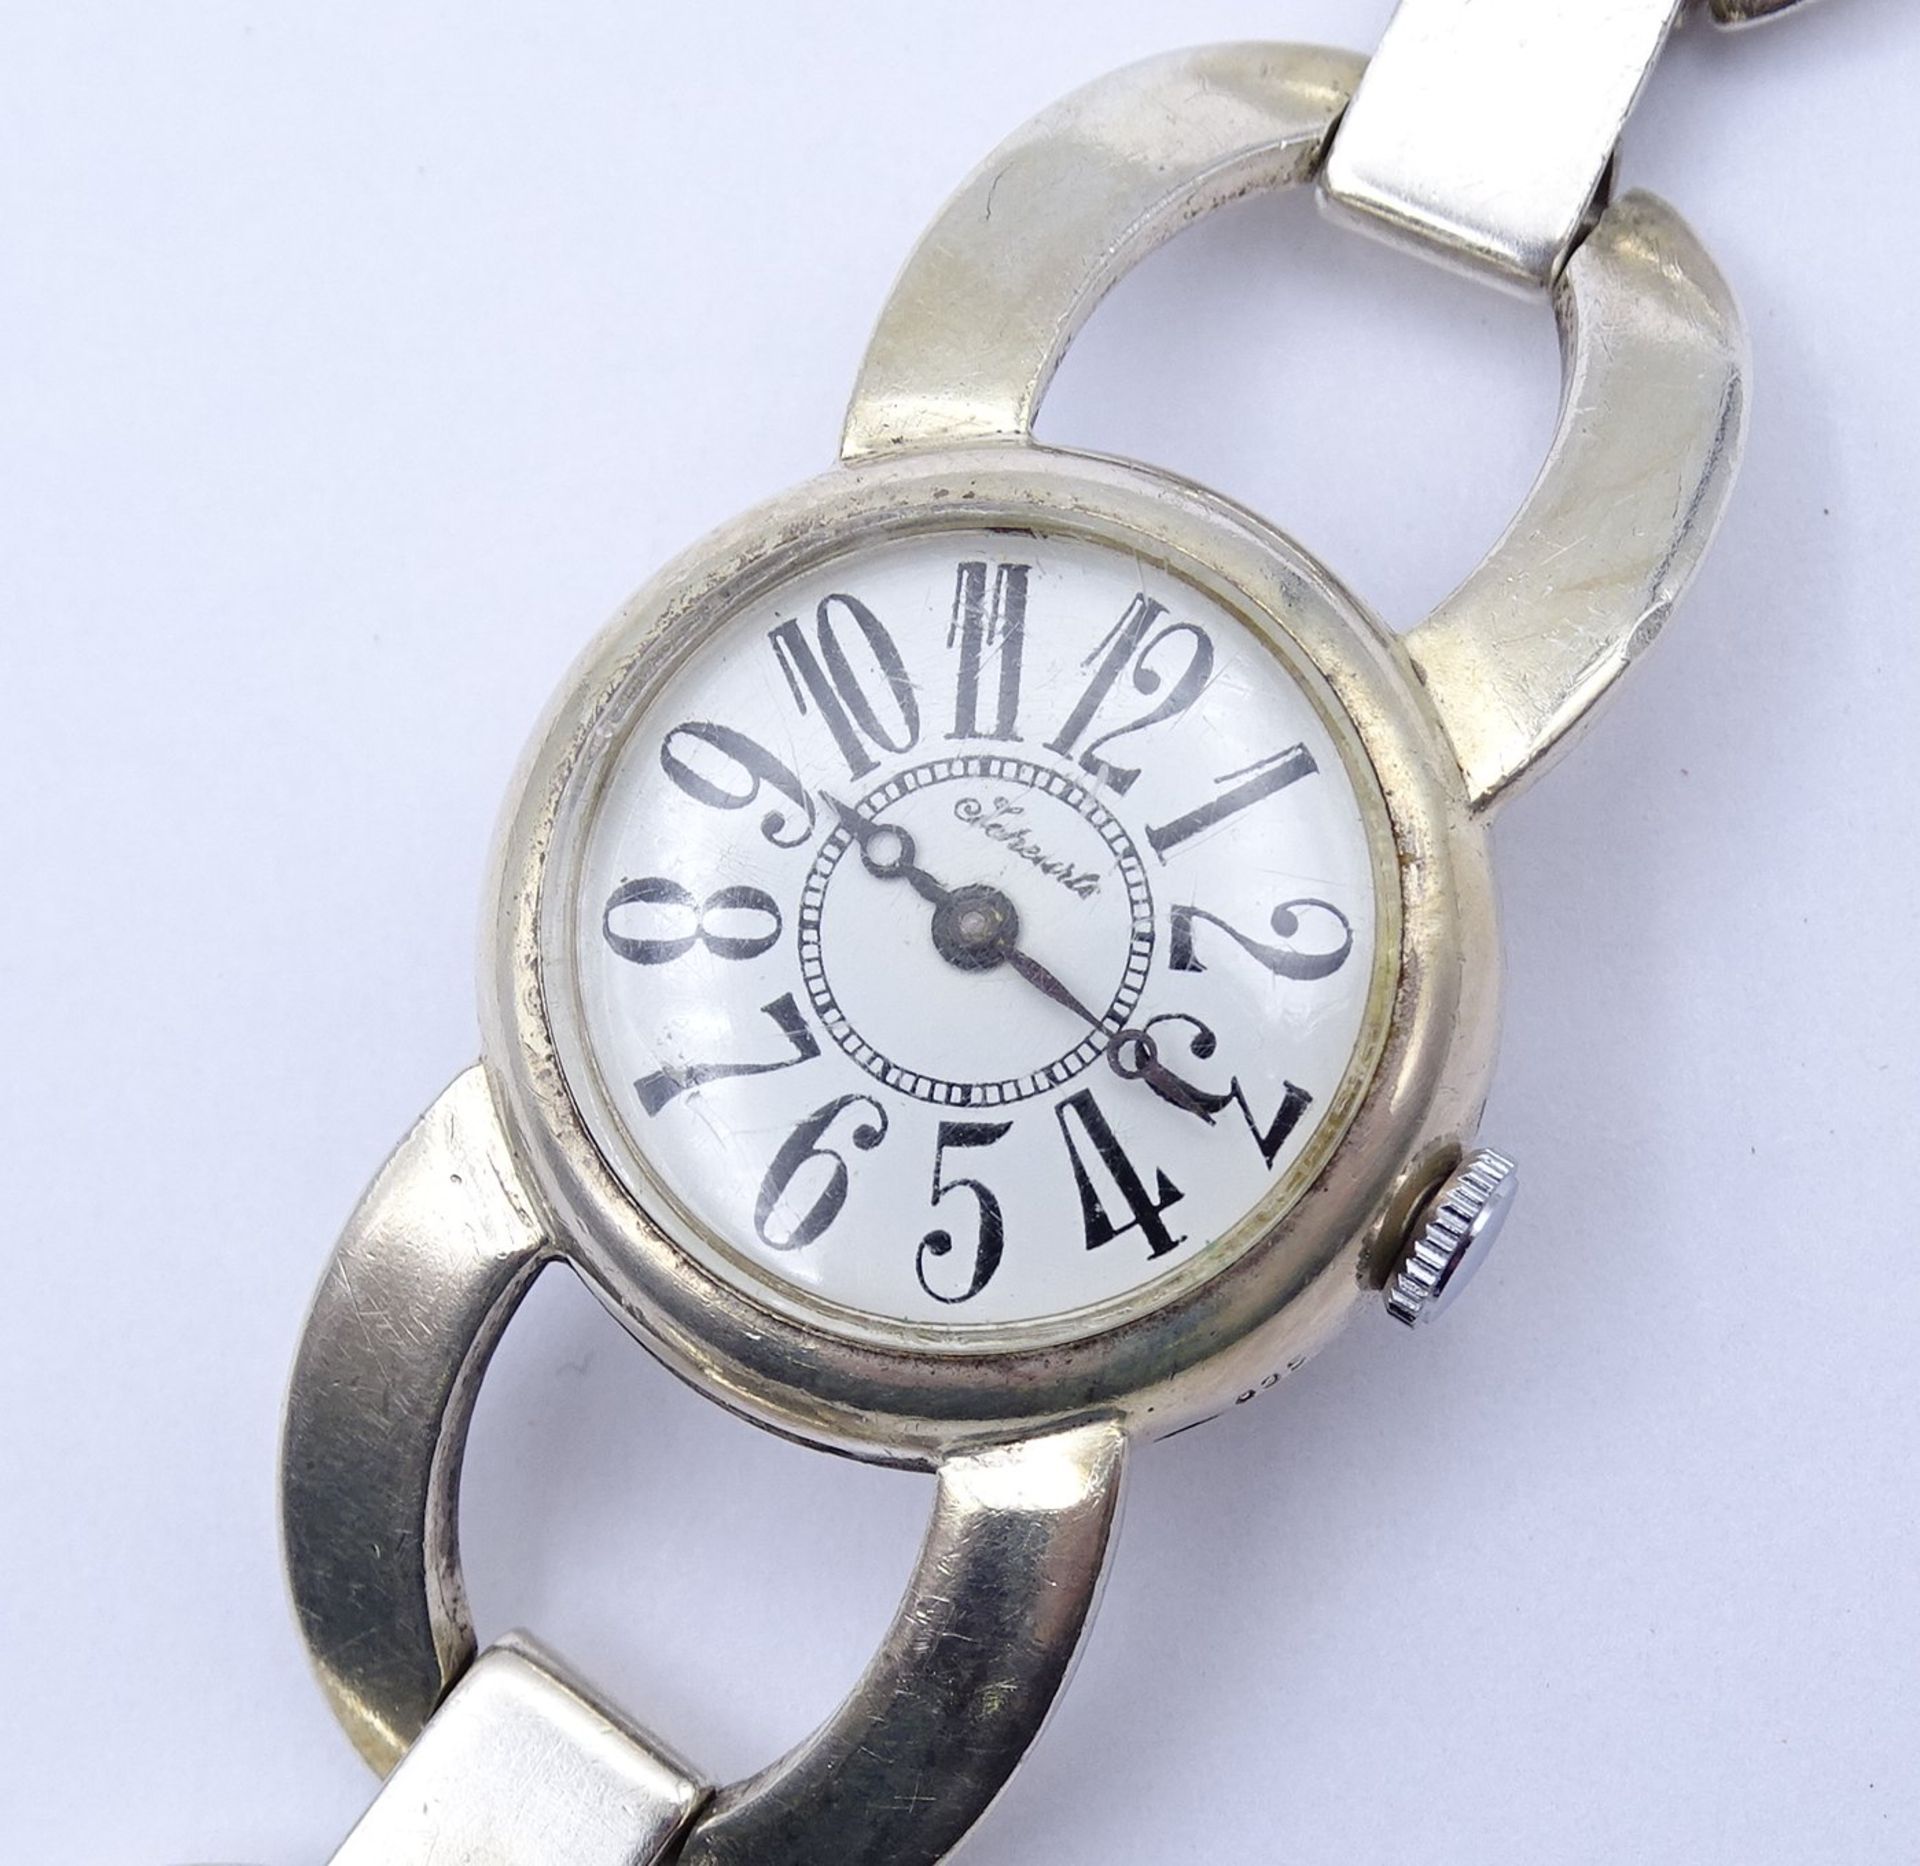 Damen Armbanduhr "Scheurle", Vollsilber 835/000, mechanisch, Werk läuft, D. 25mm, ges.Gew. 47,8g. - Image 5 of 5